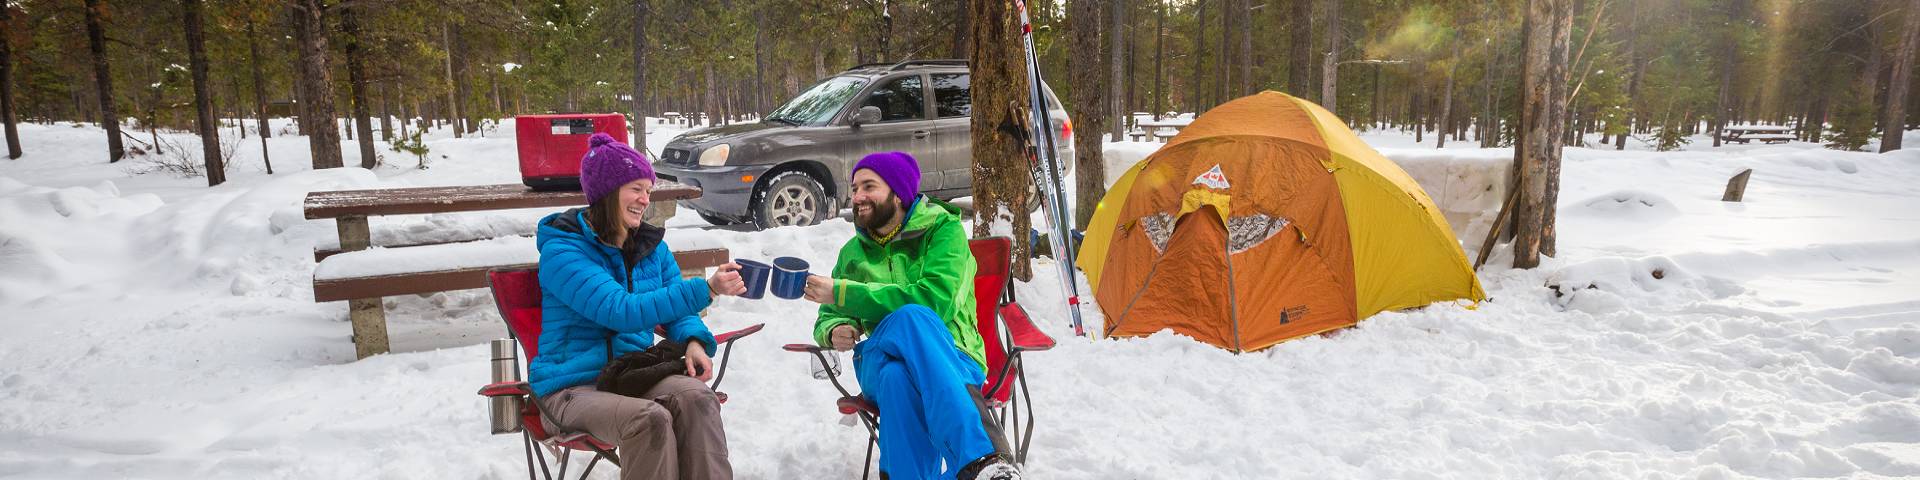 Un couple près d'une tente dans la neige